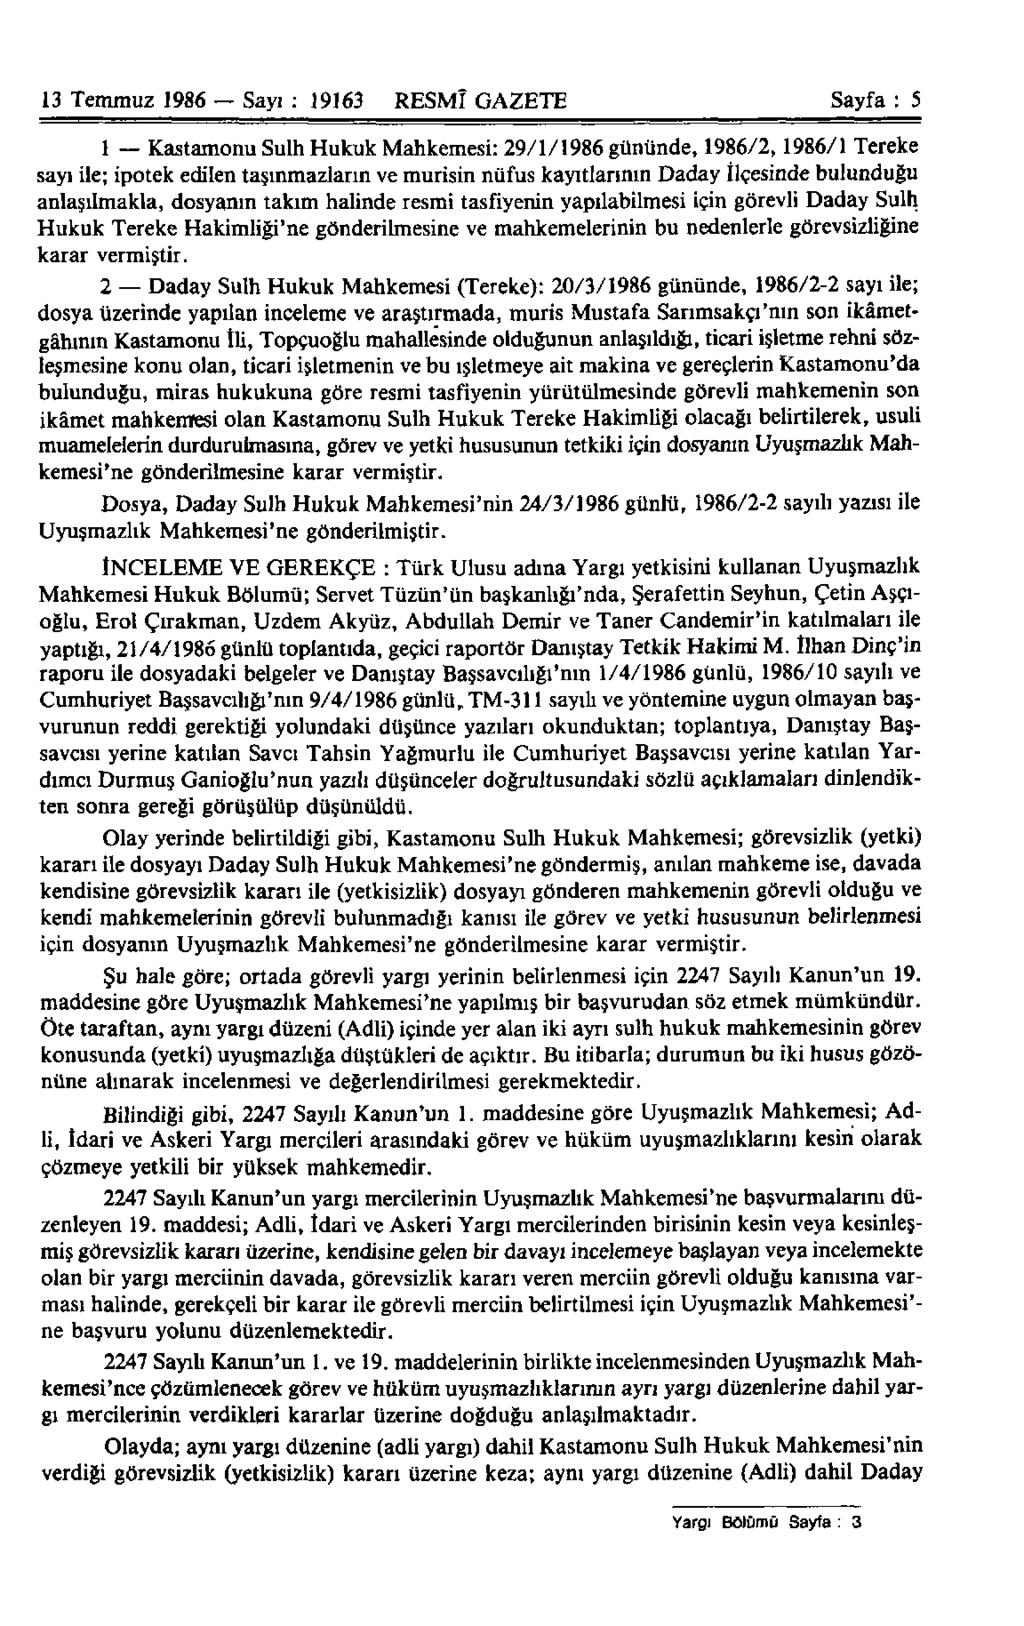 13 Temmuz 1986 Sayı : 19163 RESMÎ GAZETE Sayfa : 5 1 Kastamonu Sulh Hukuk Mahkemesi: 29/1/1986 gününde, 1986/2,1986/1 Tereke sayı ile; ipotek edilen taşınmazların ve murisin nüfus kayıtlarının Daday